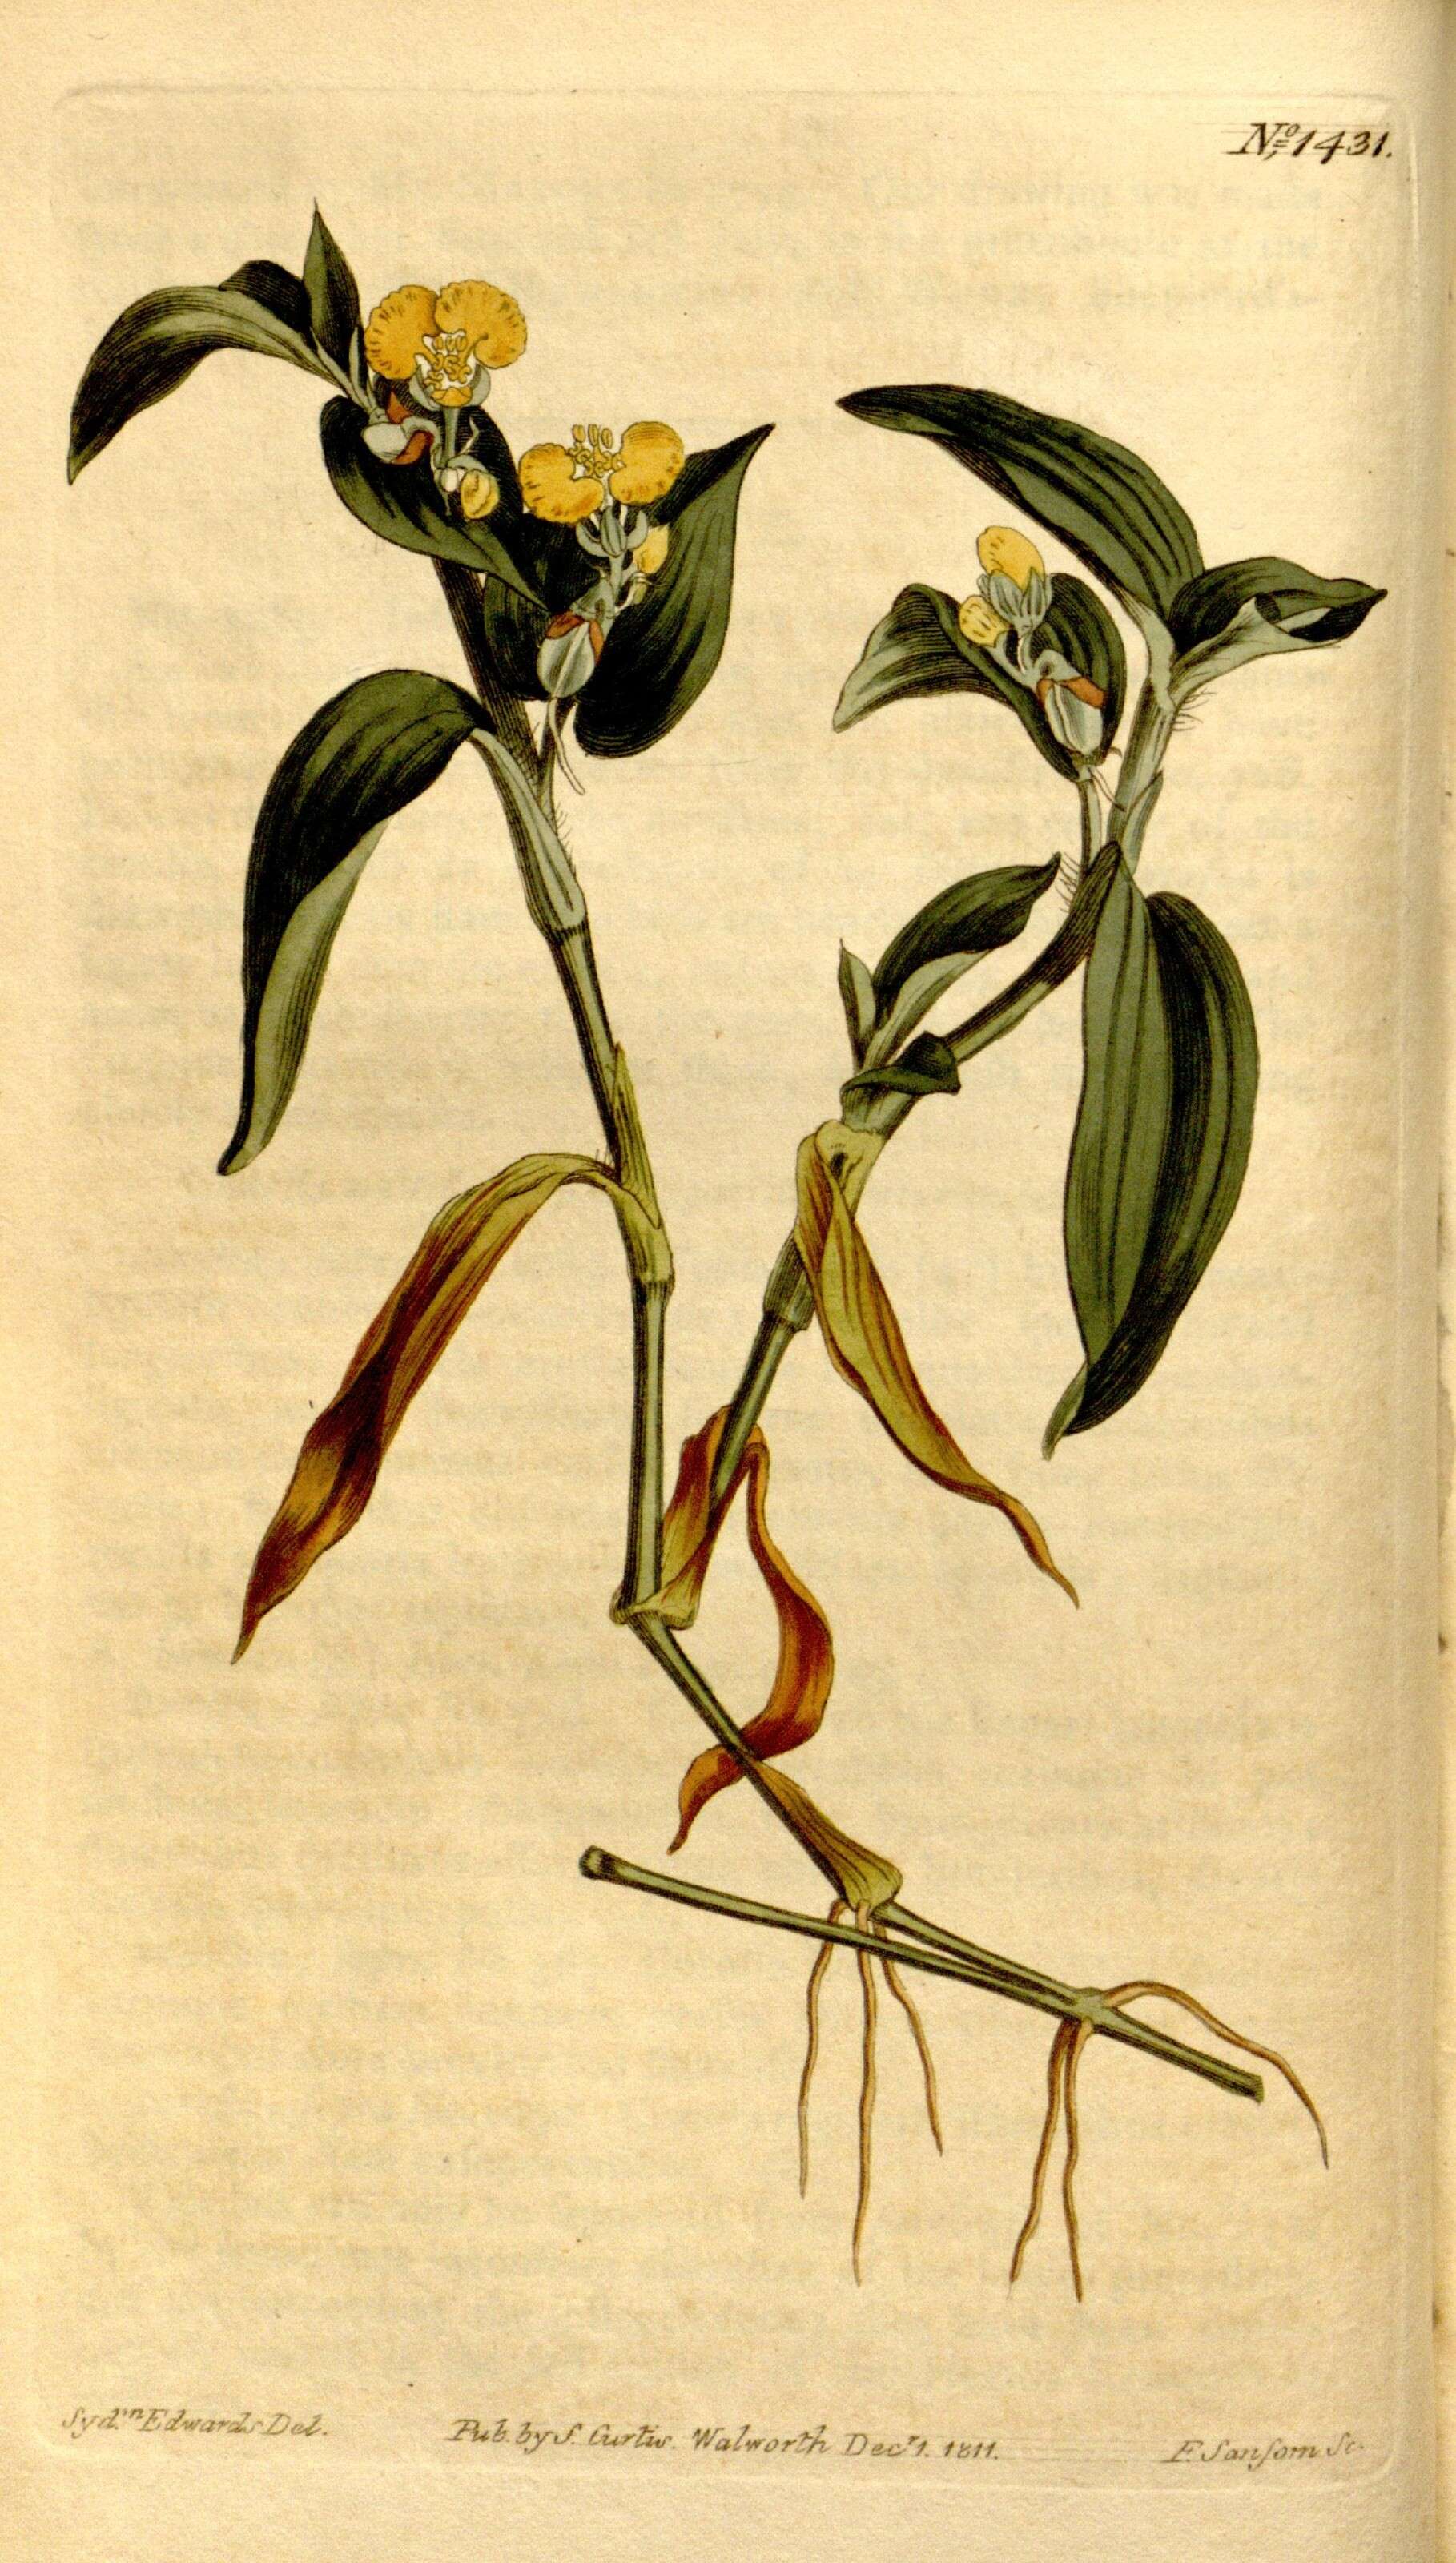 Image de Commelinaceae